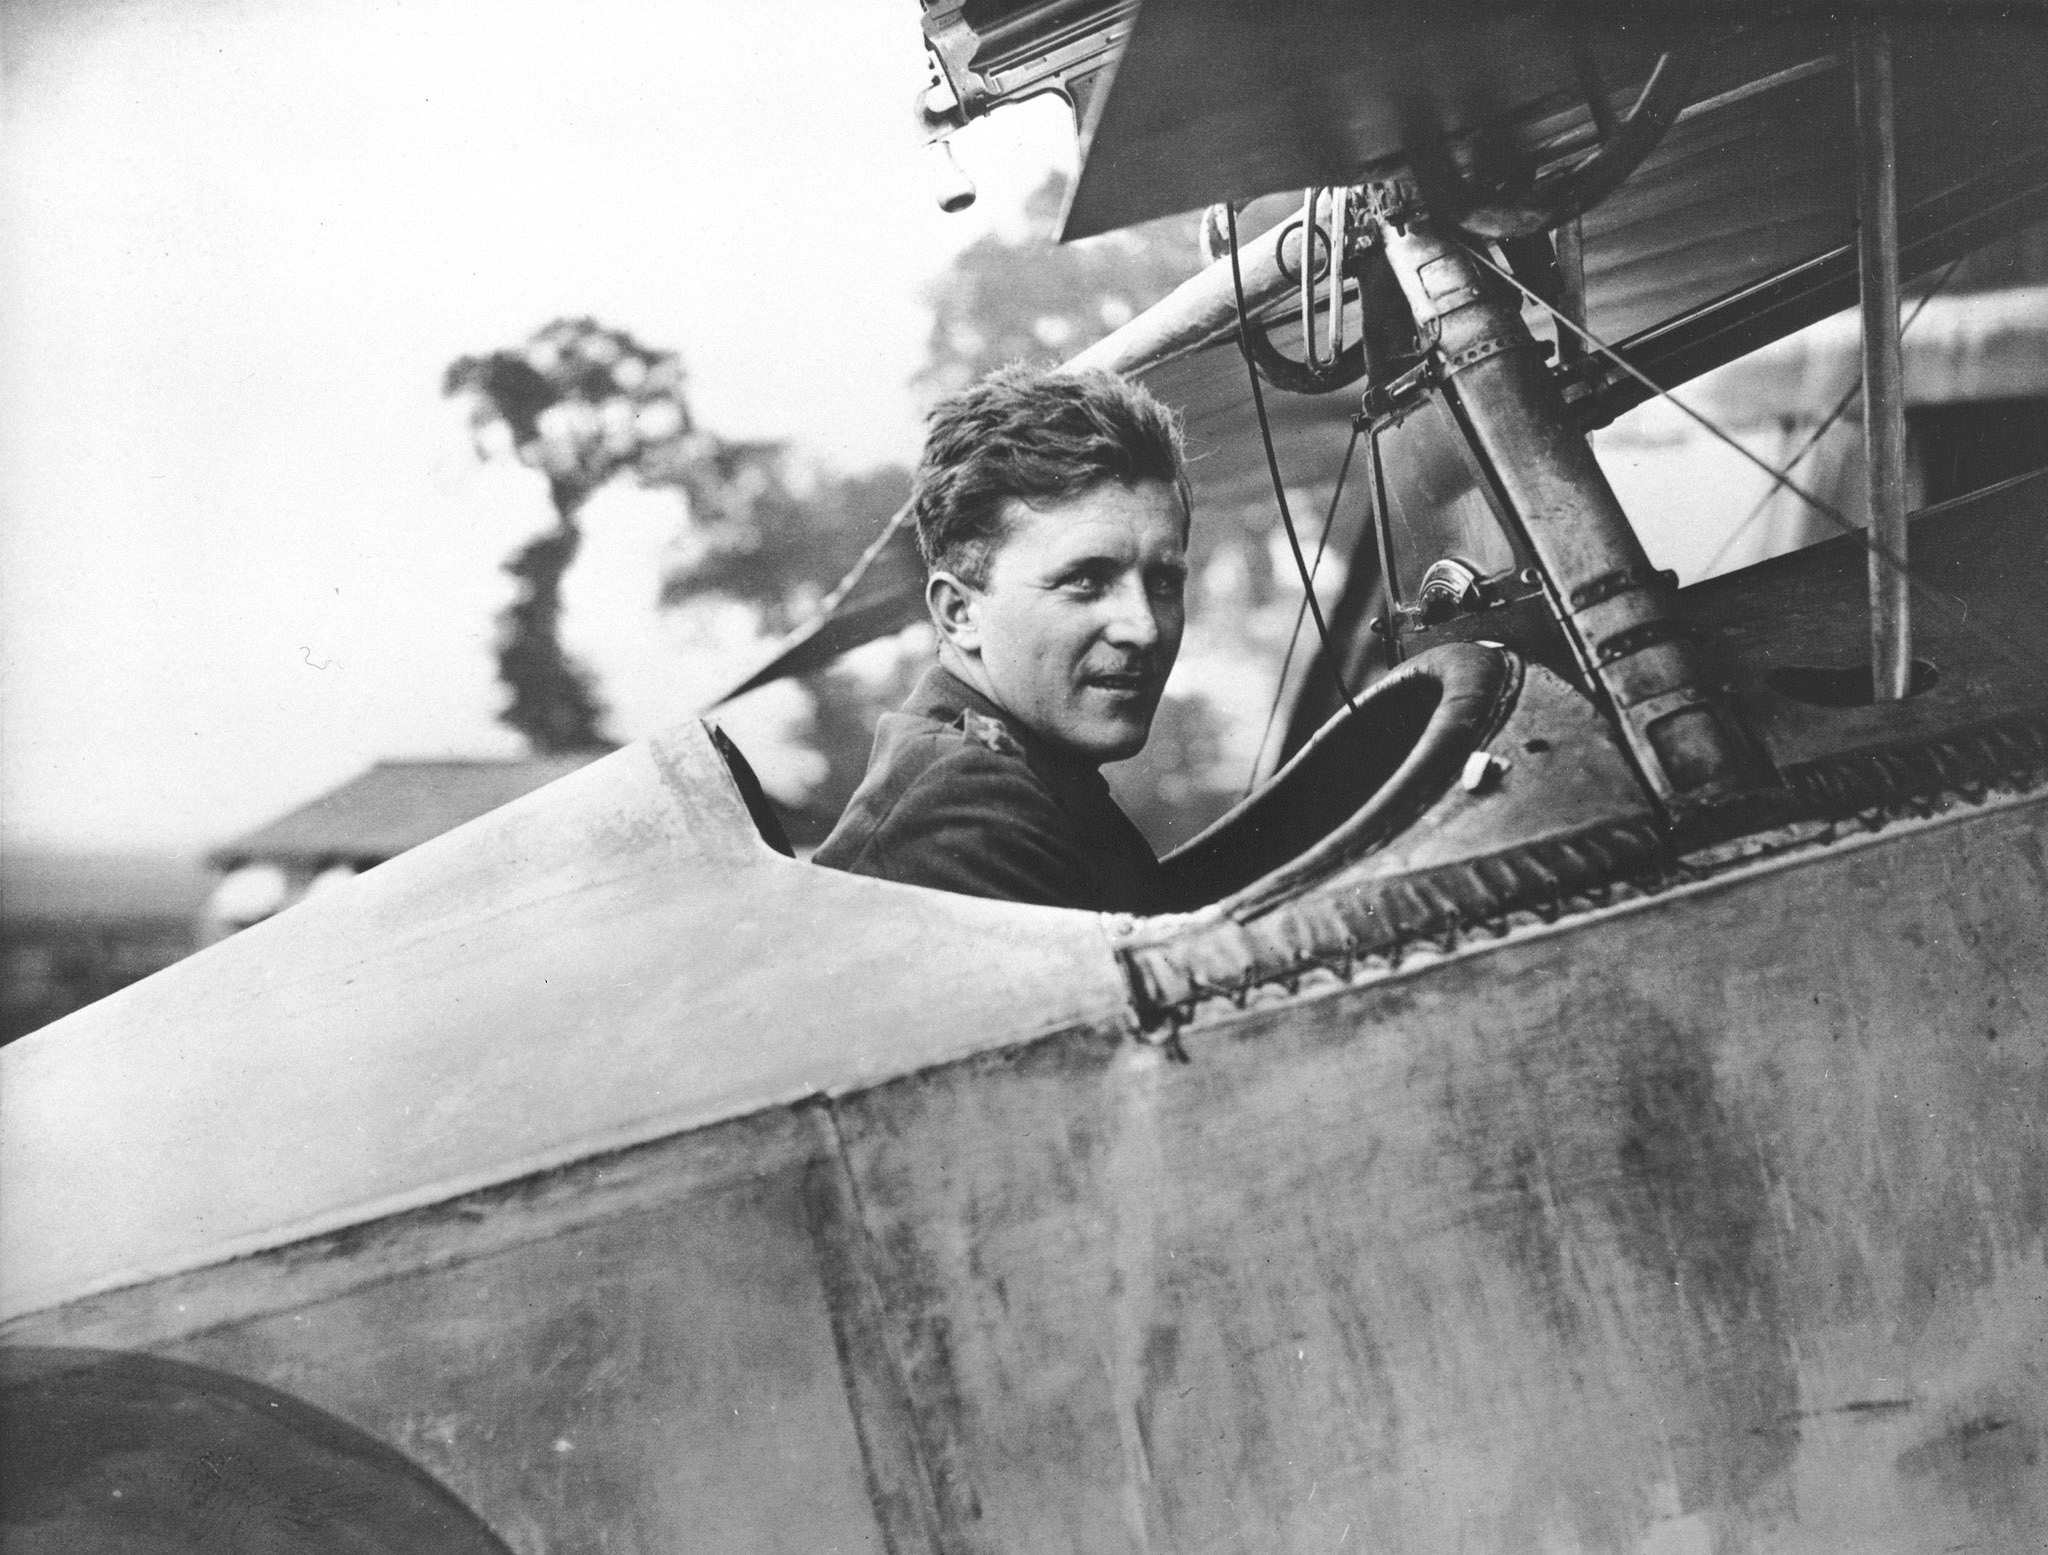 Une photo en noir et blanc d’un homme assis dans le poste de pilotage d’un chasseur biplan de la Première Guerre mondiale.